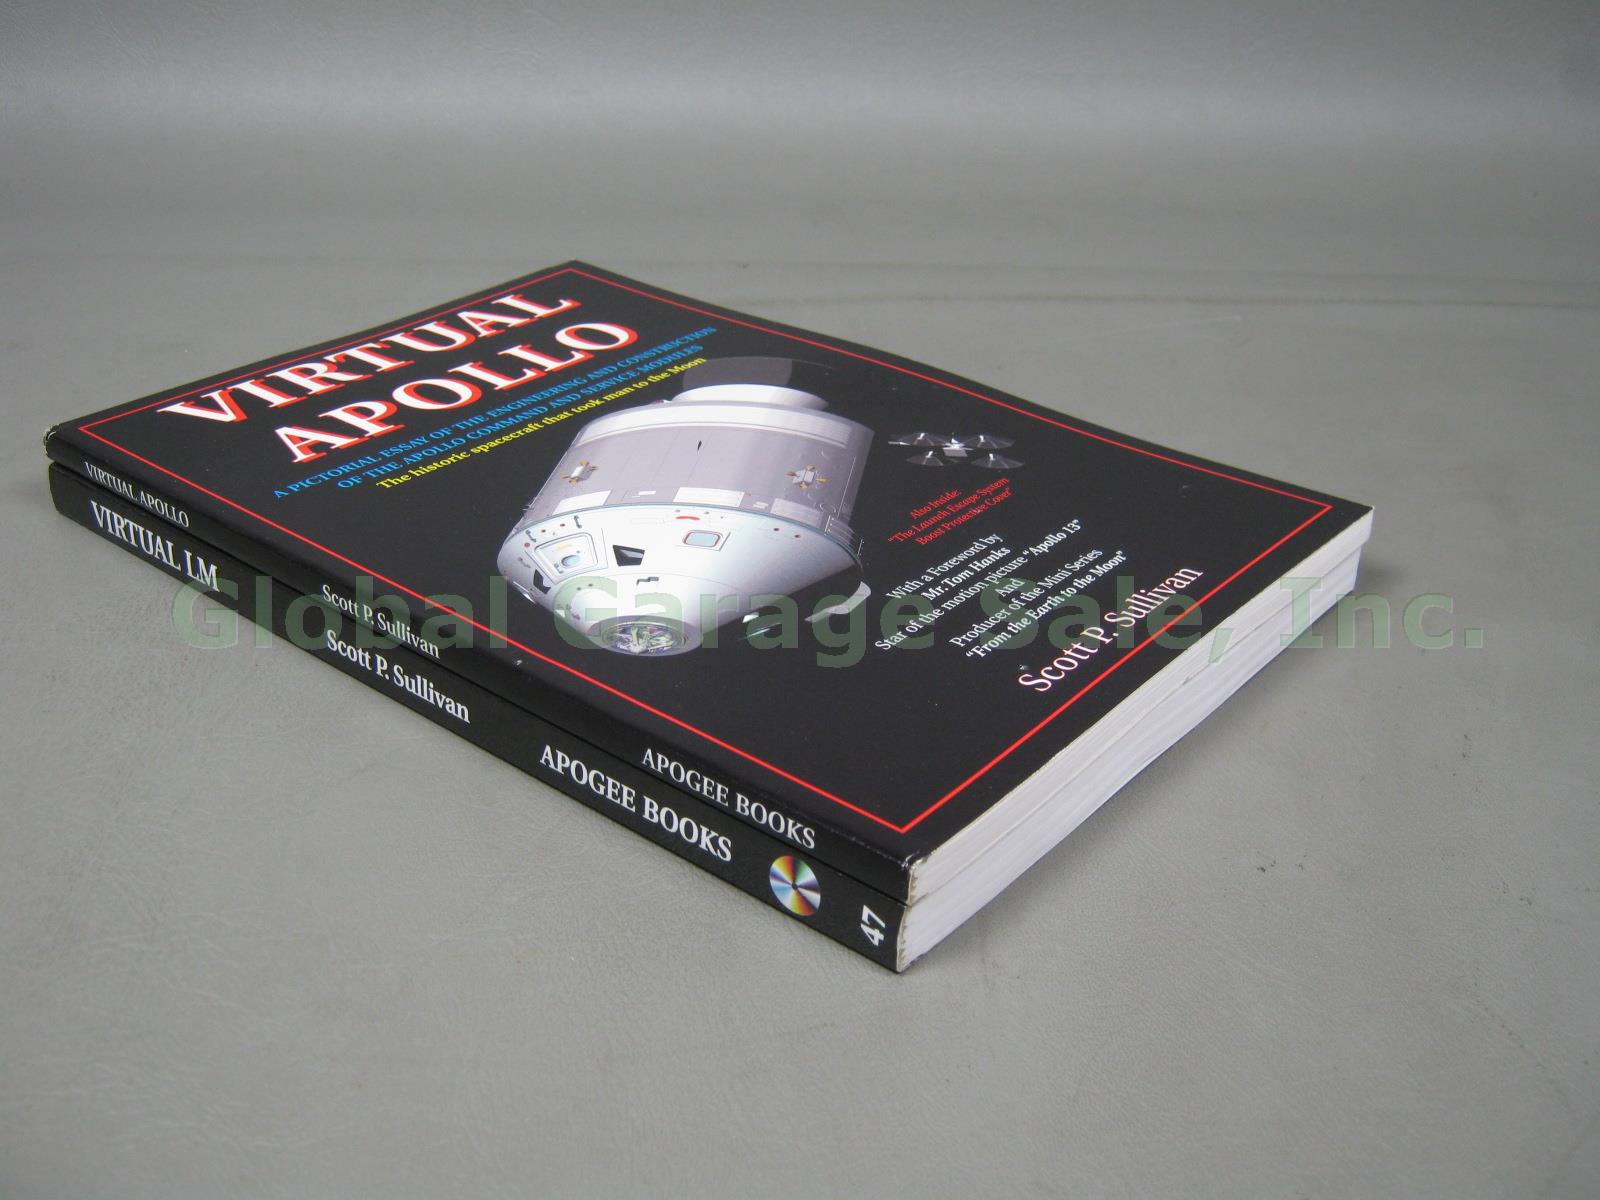 2 Apogee Soft Cover Book Lot 2002 Virtual Apollo + 2004 LM +CDROM Scott Sullivan